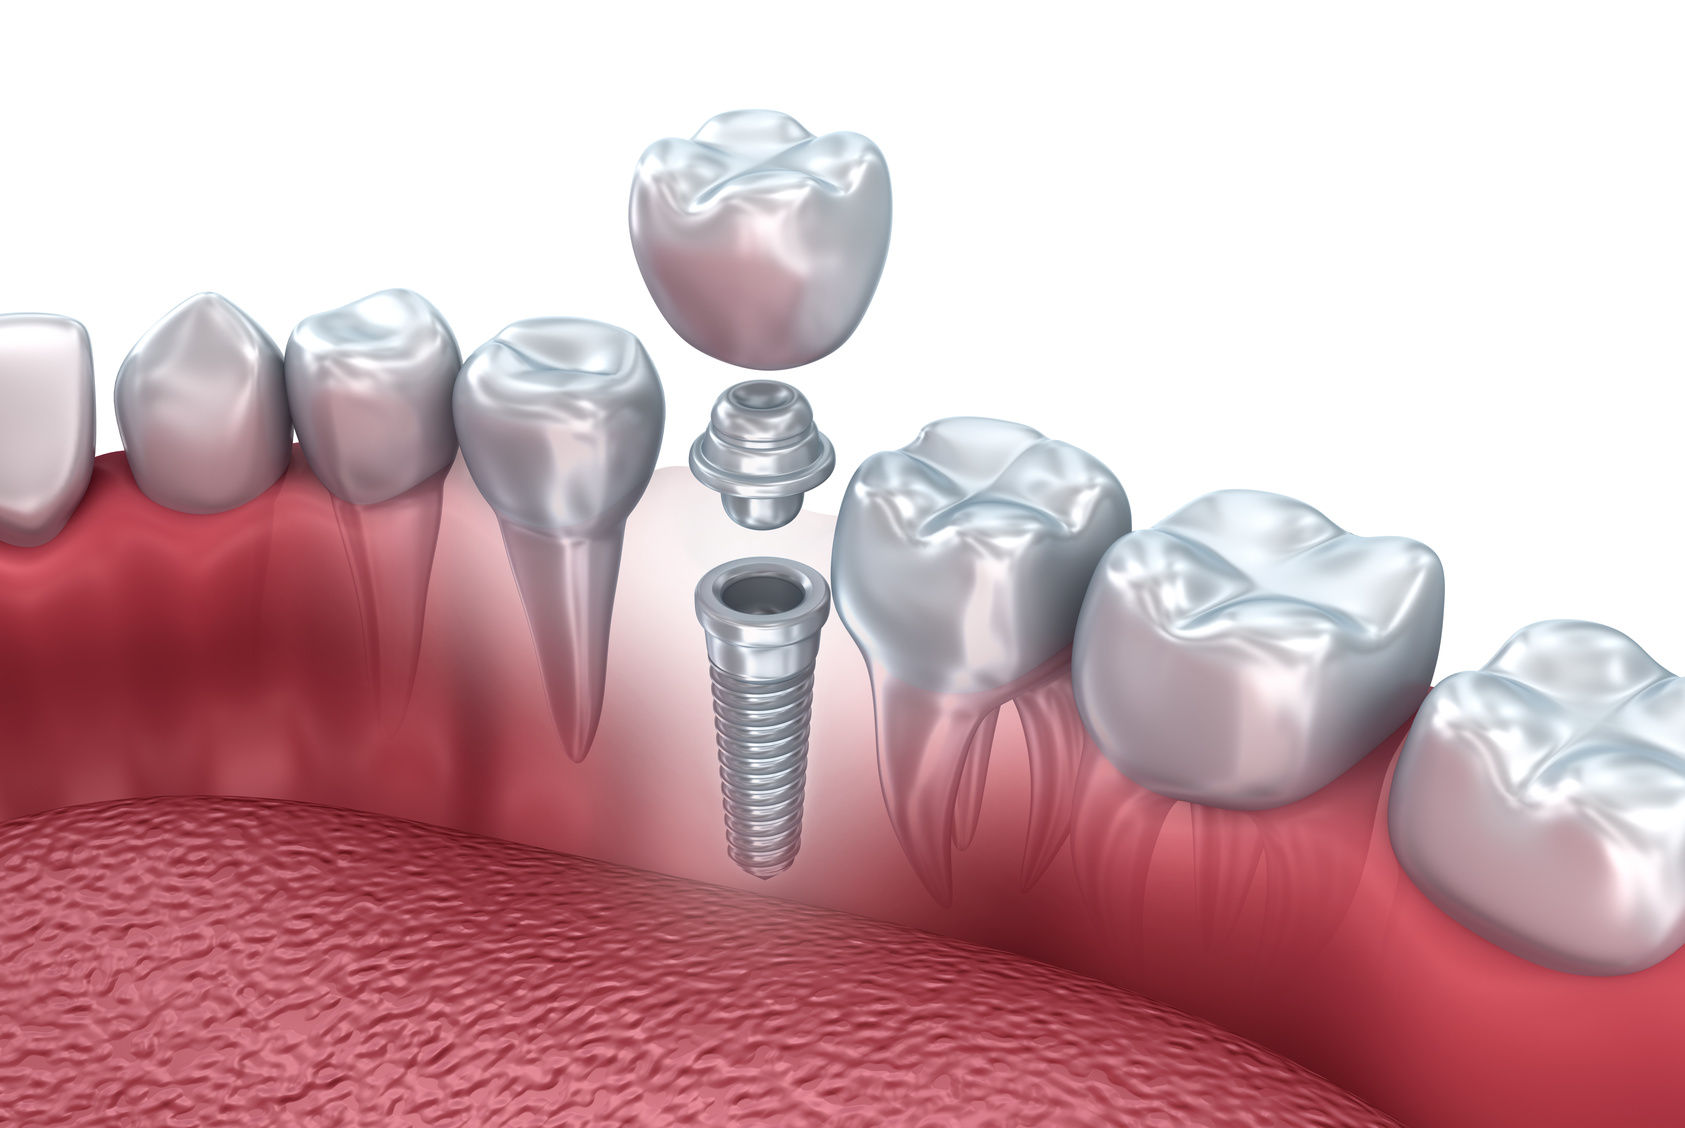 из чего делают зубные импланты?